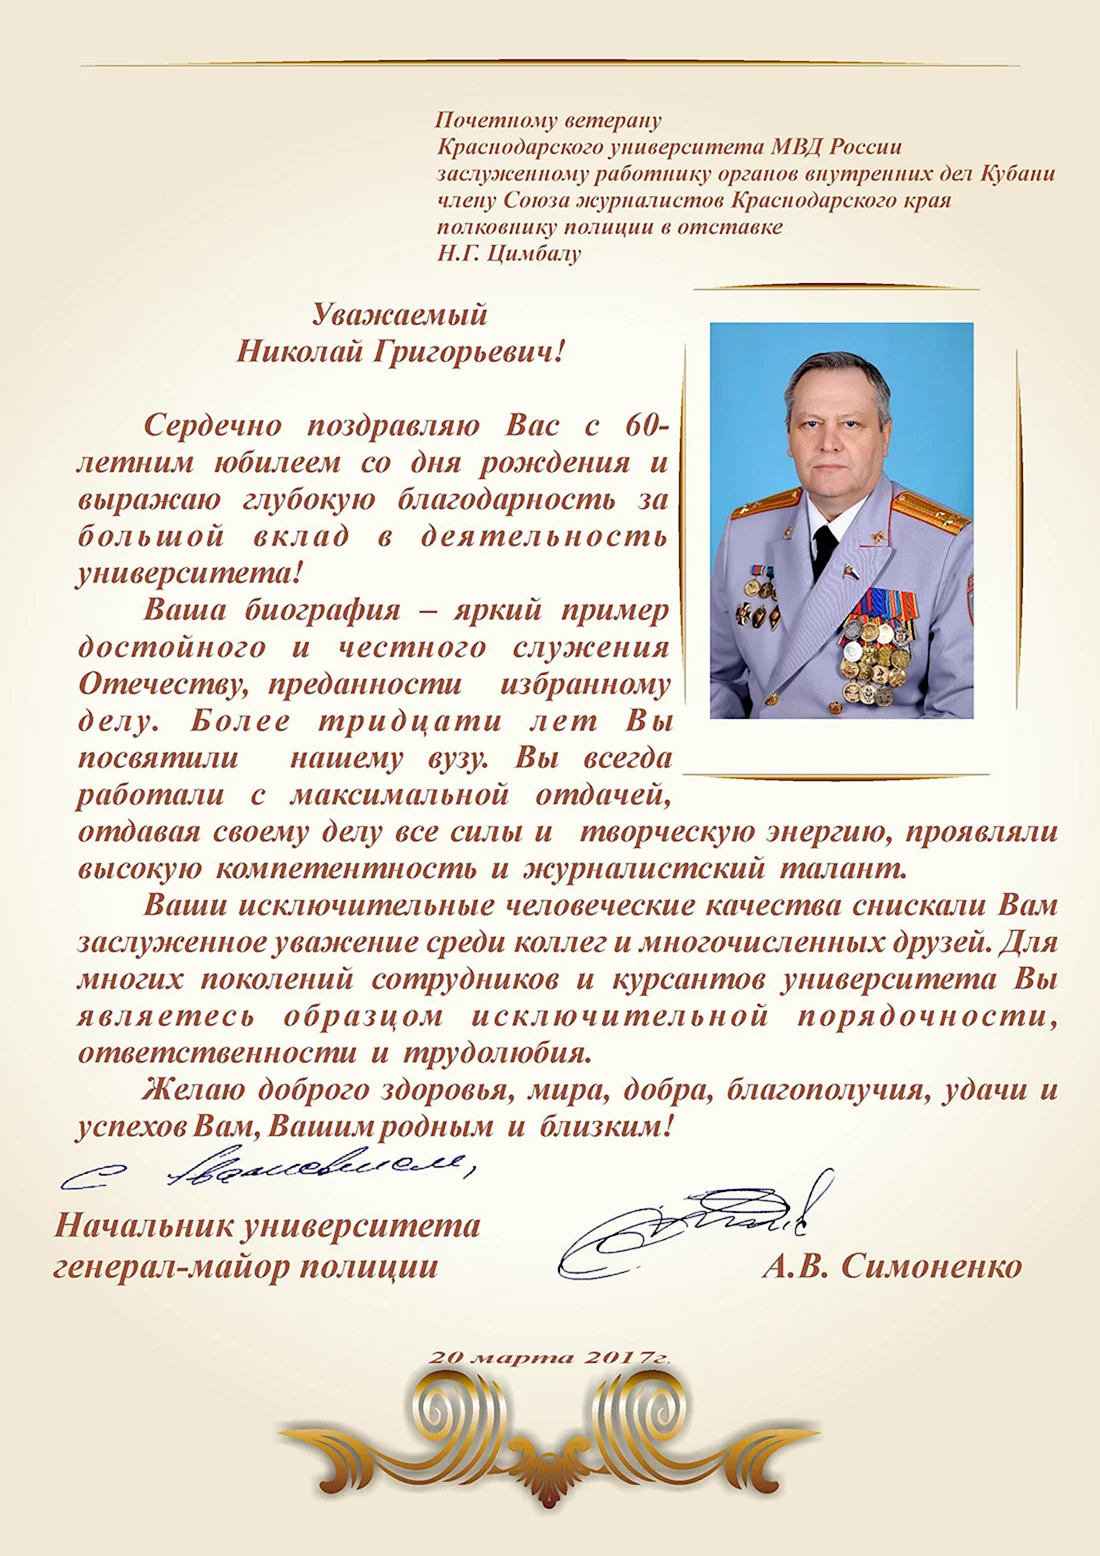 Поздравления с днём рождения генералу МВД